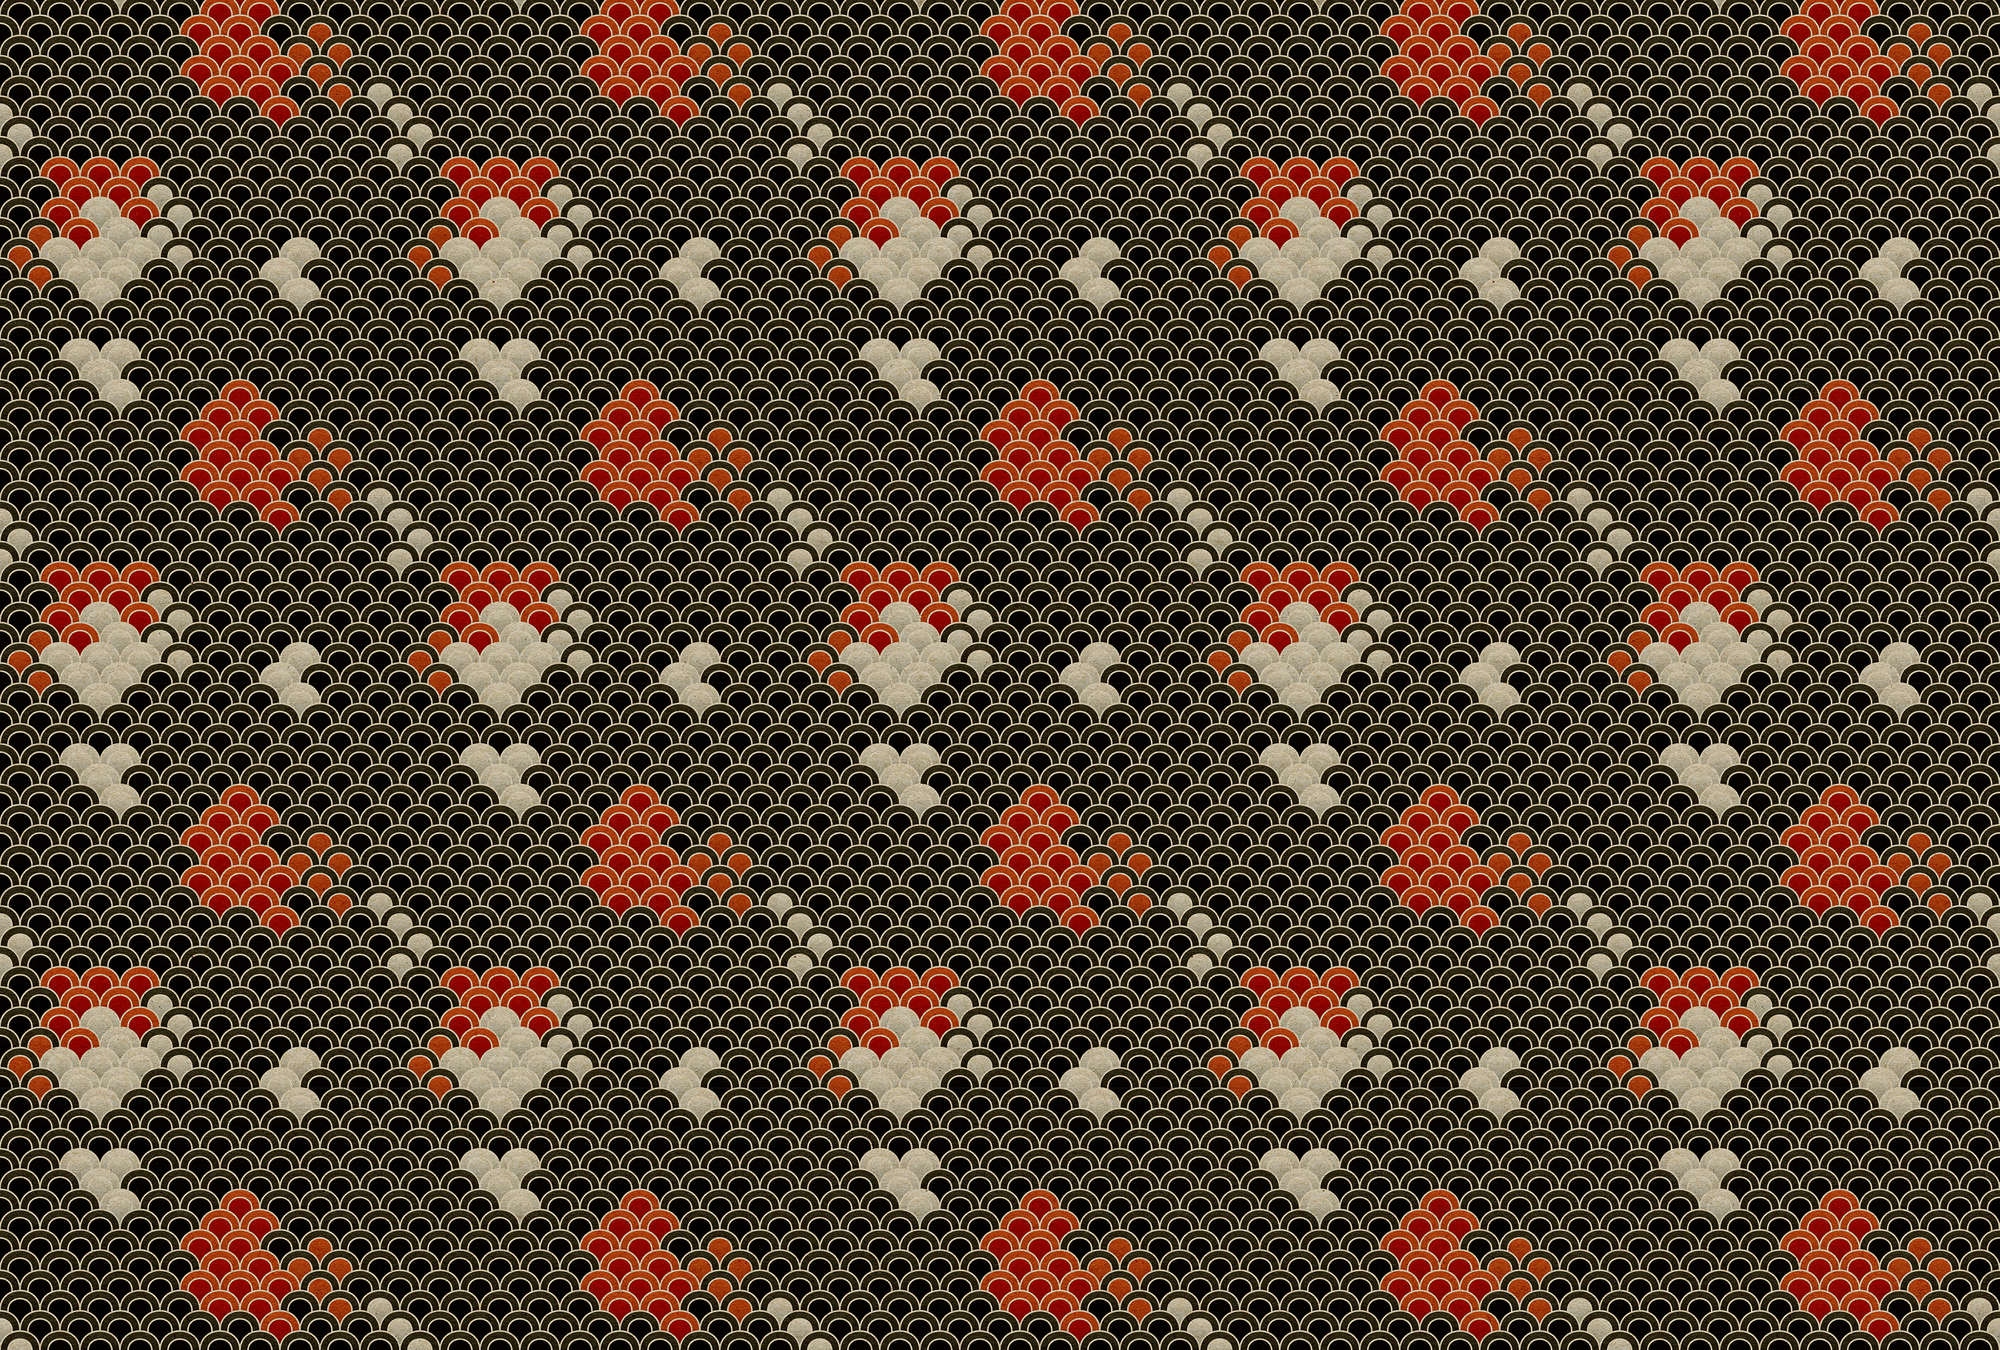             Koi 1 - Dark Koi Pond Wallpaper - Cardboard Structure - Beige, Red | Matt Smooth Non-woven
        